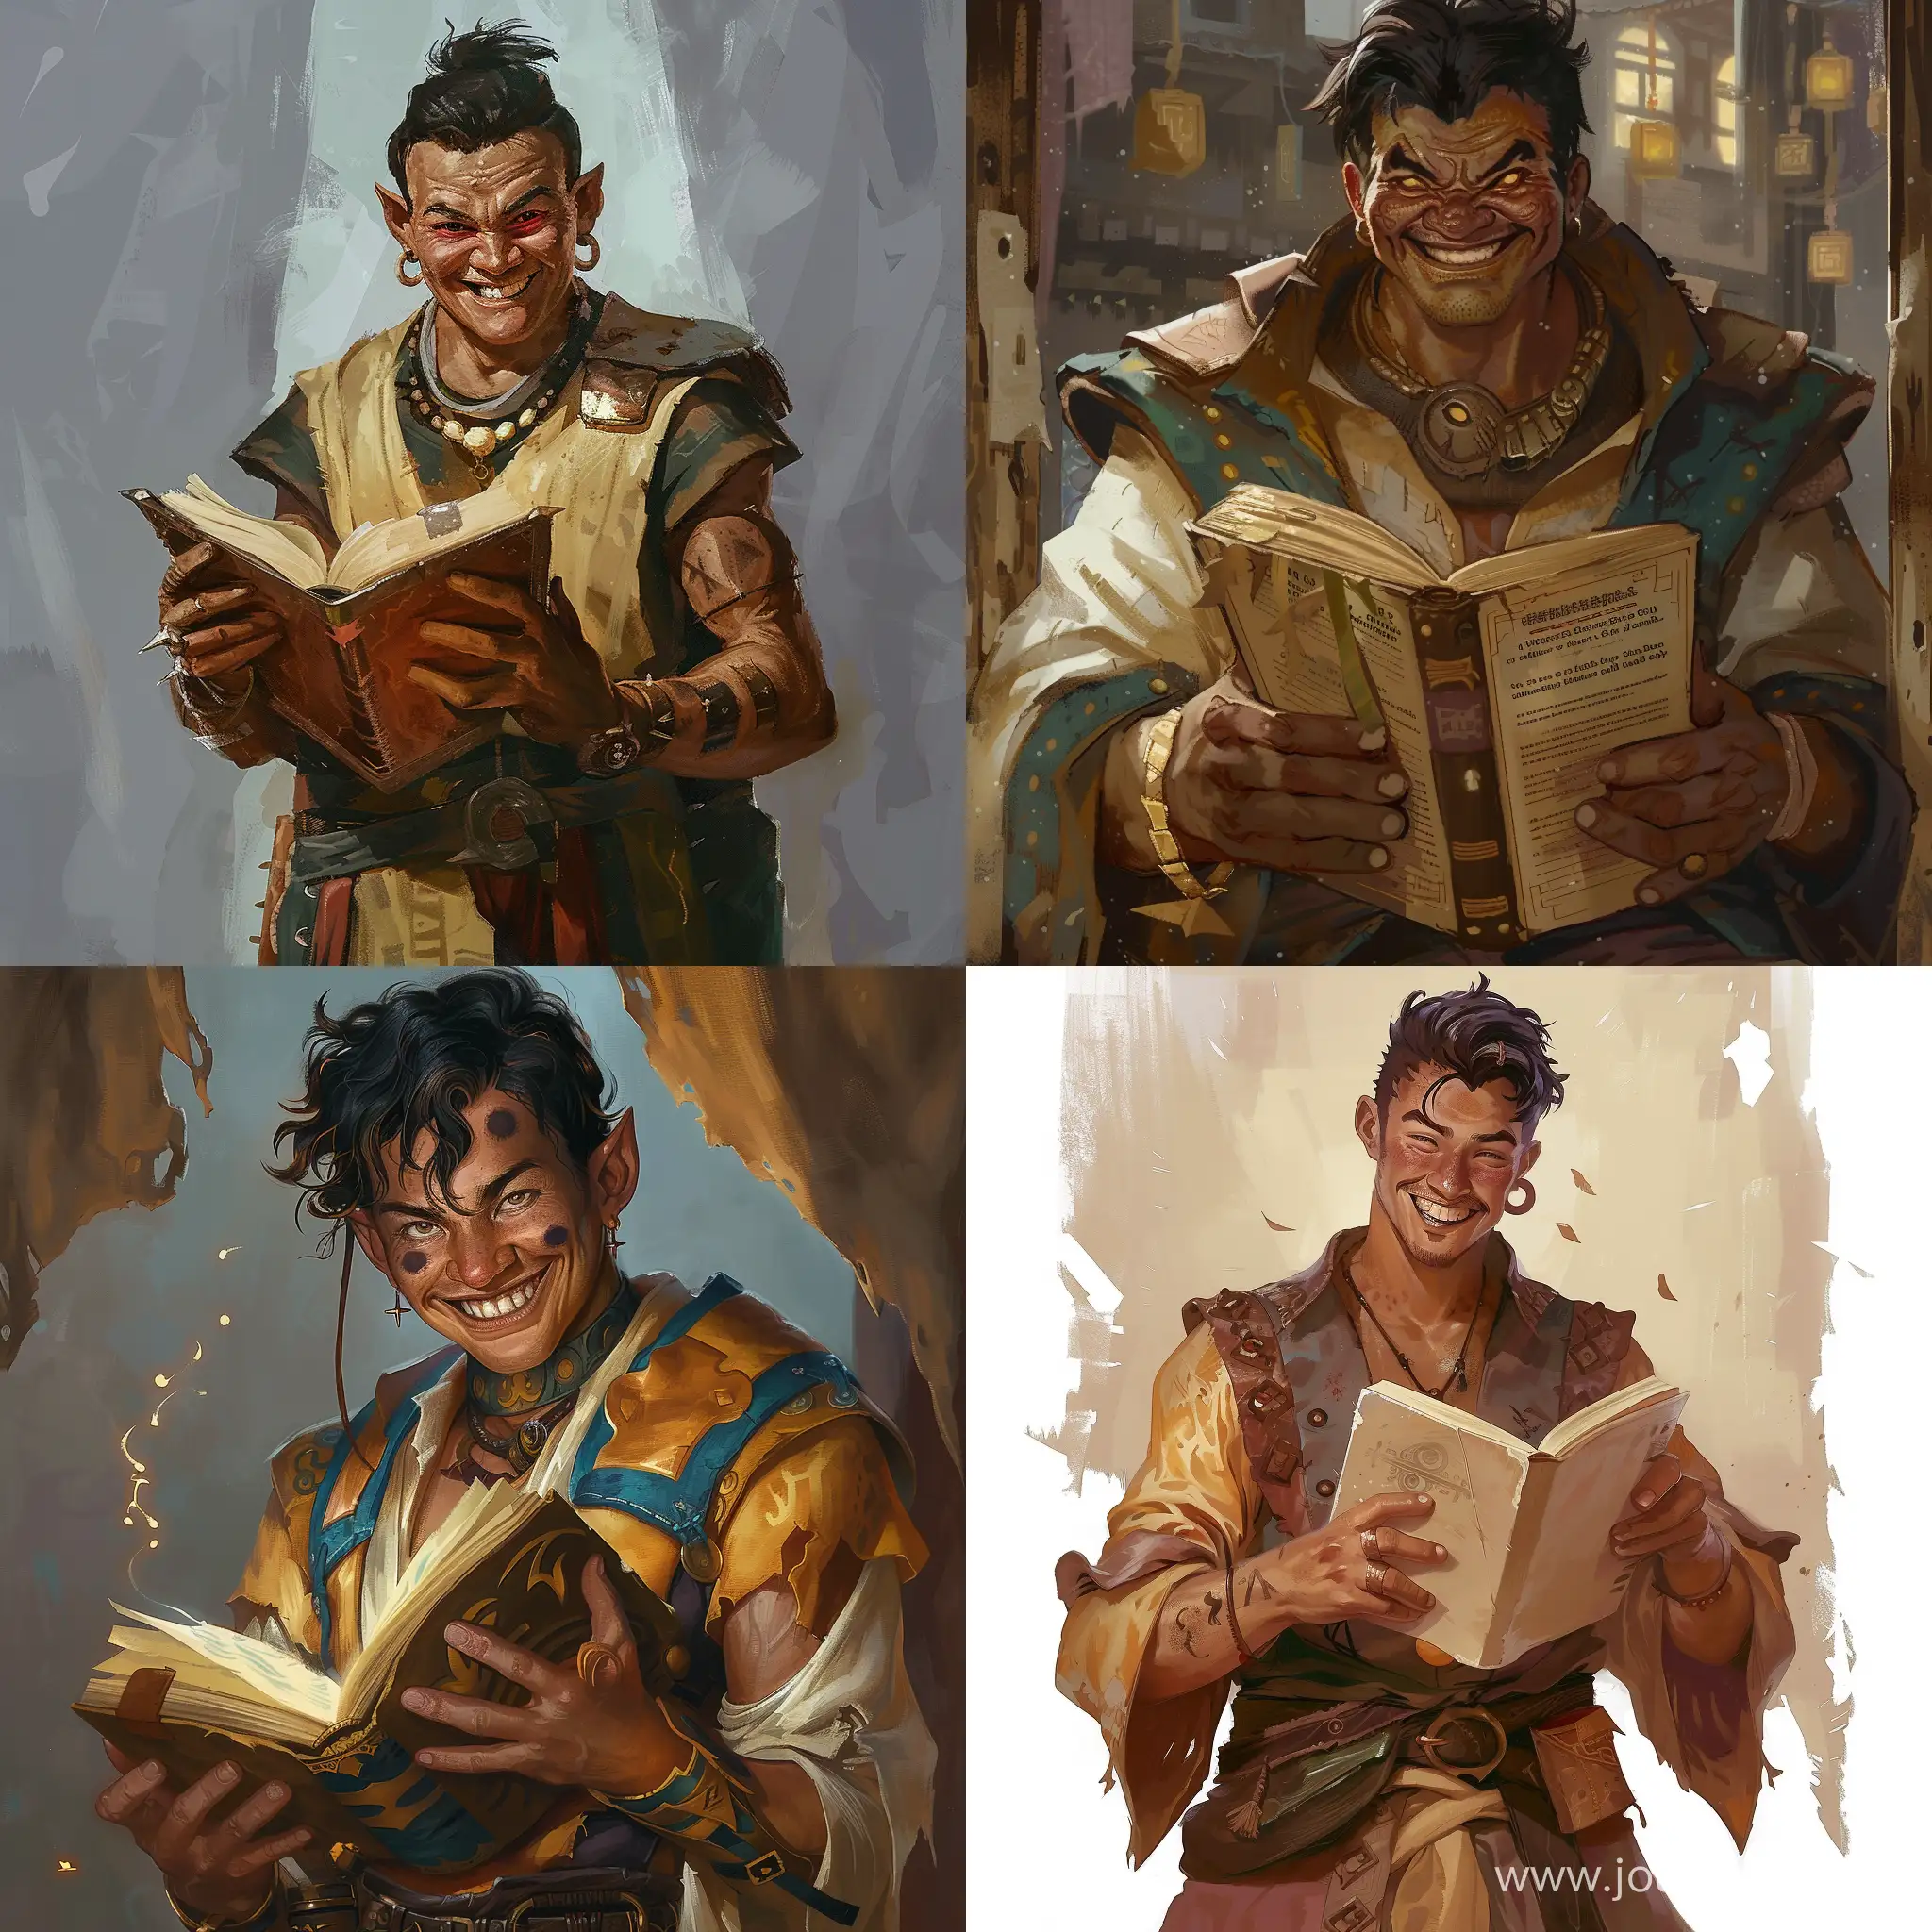 Загорелый мужчина человек из азии со злой улыбкой и кругами под глазами, книгой в руках и одежде приключенца из фентезийного мира